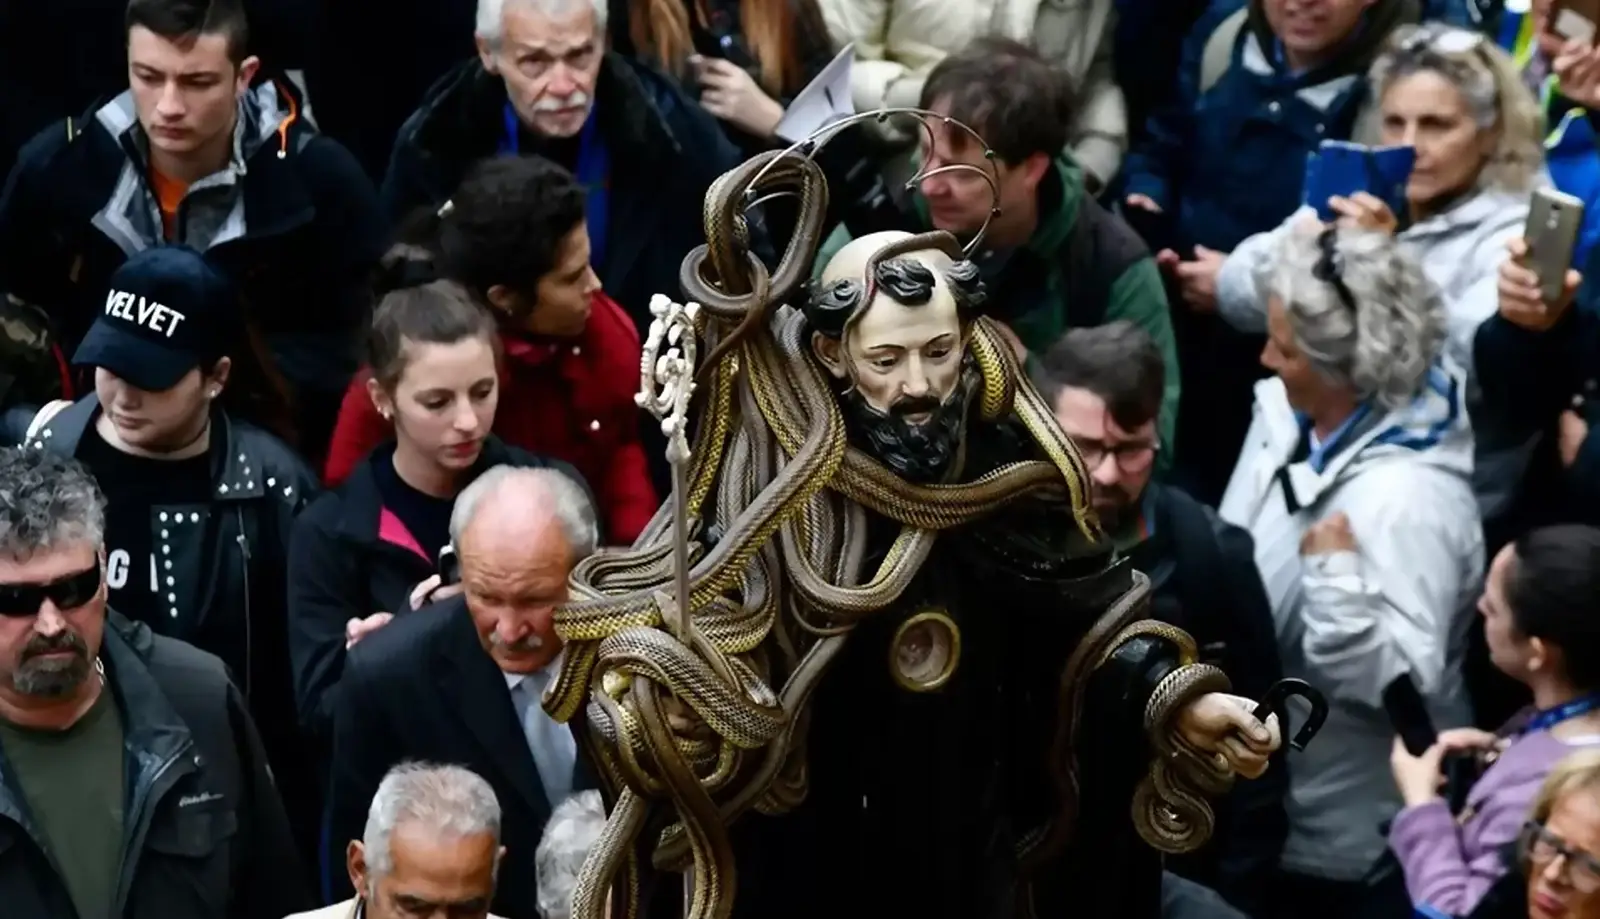 Bàng hoàng trước lễ hội rước rắn kỳ lạ ở Ý